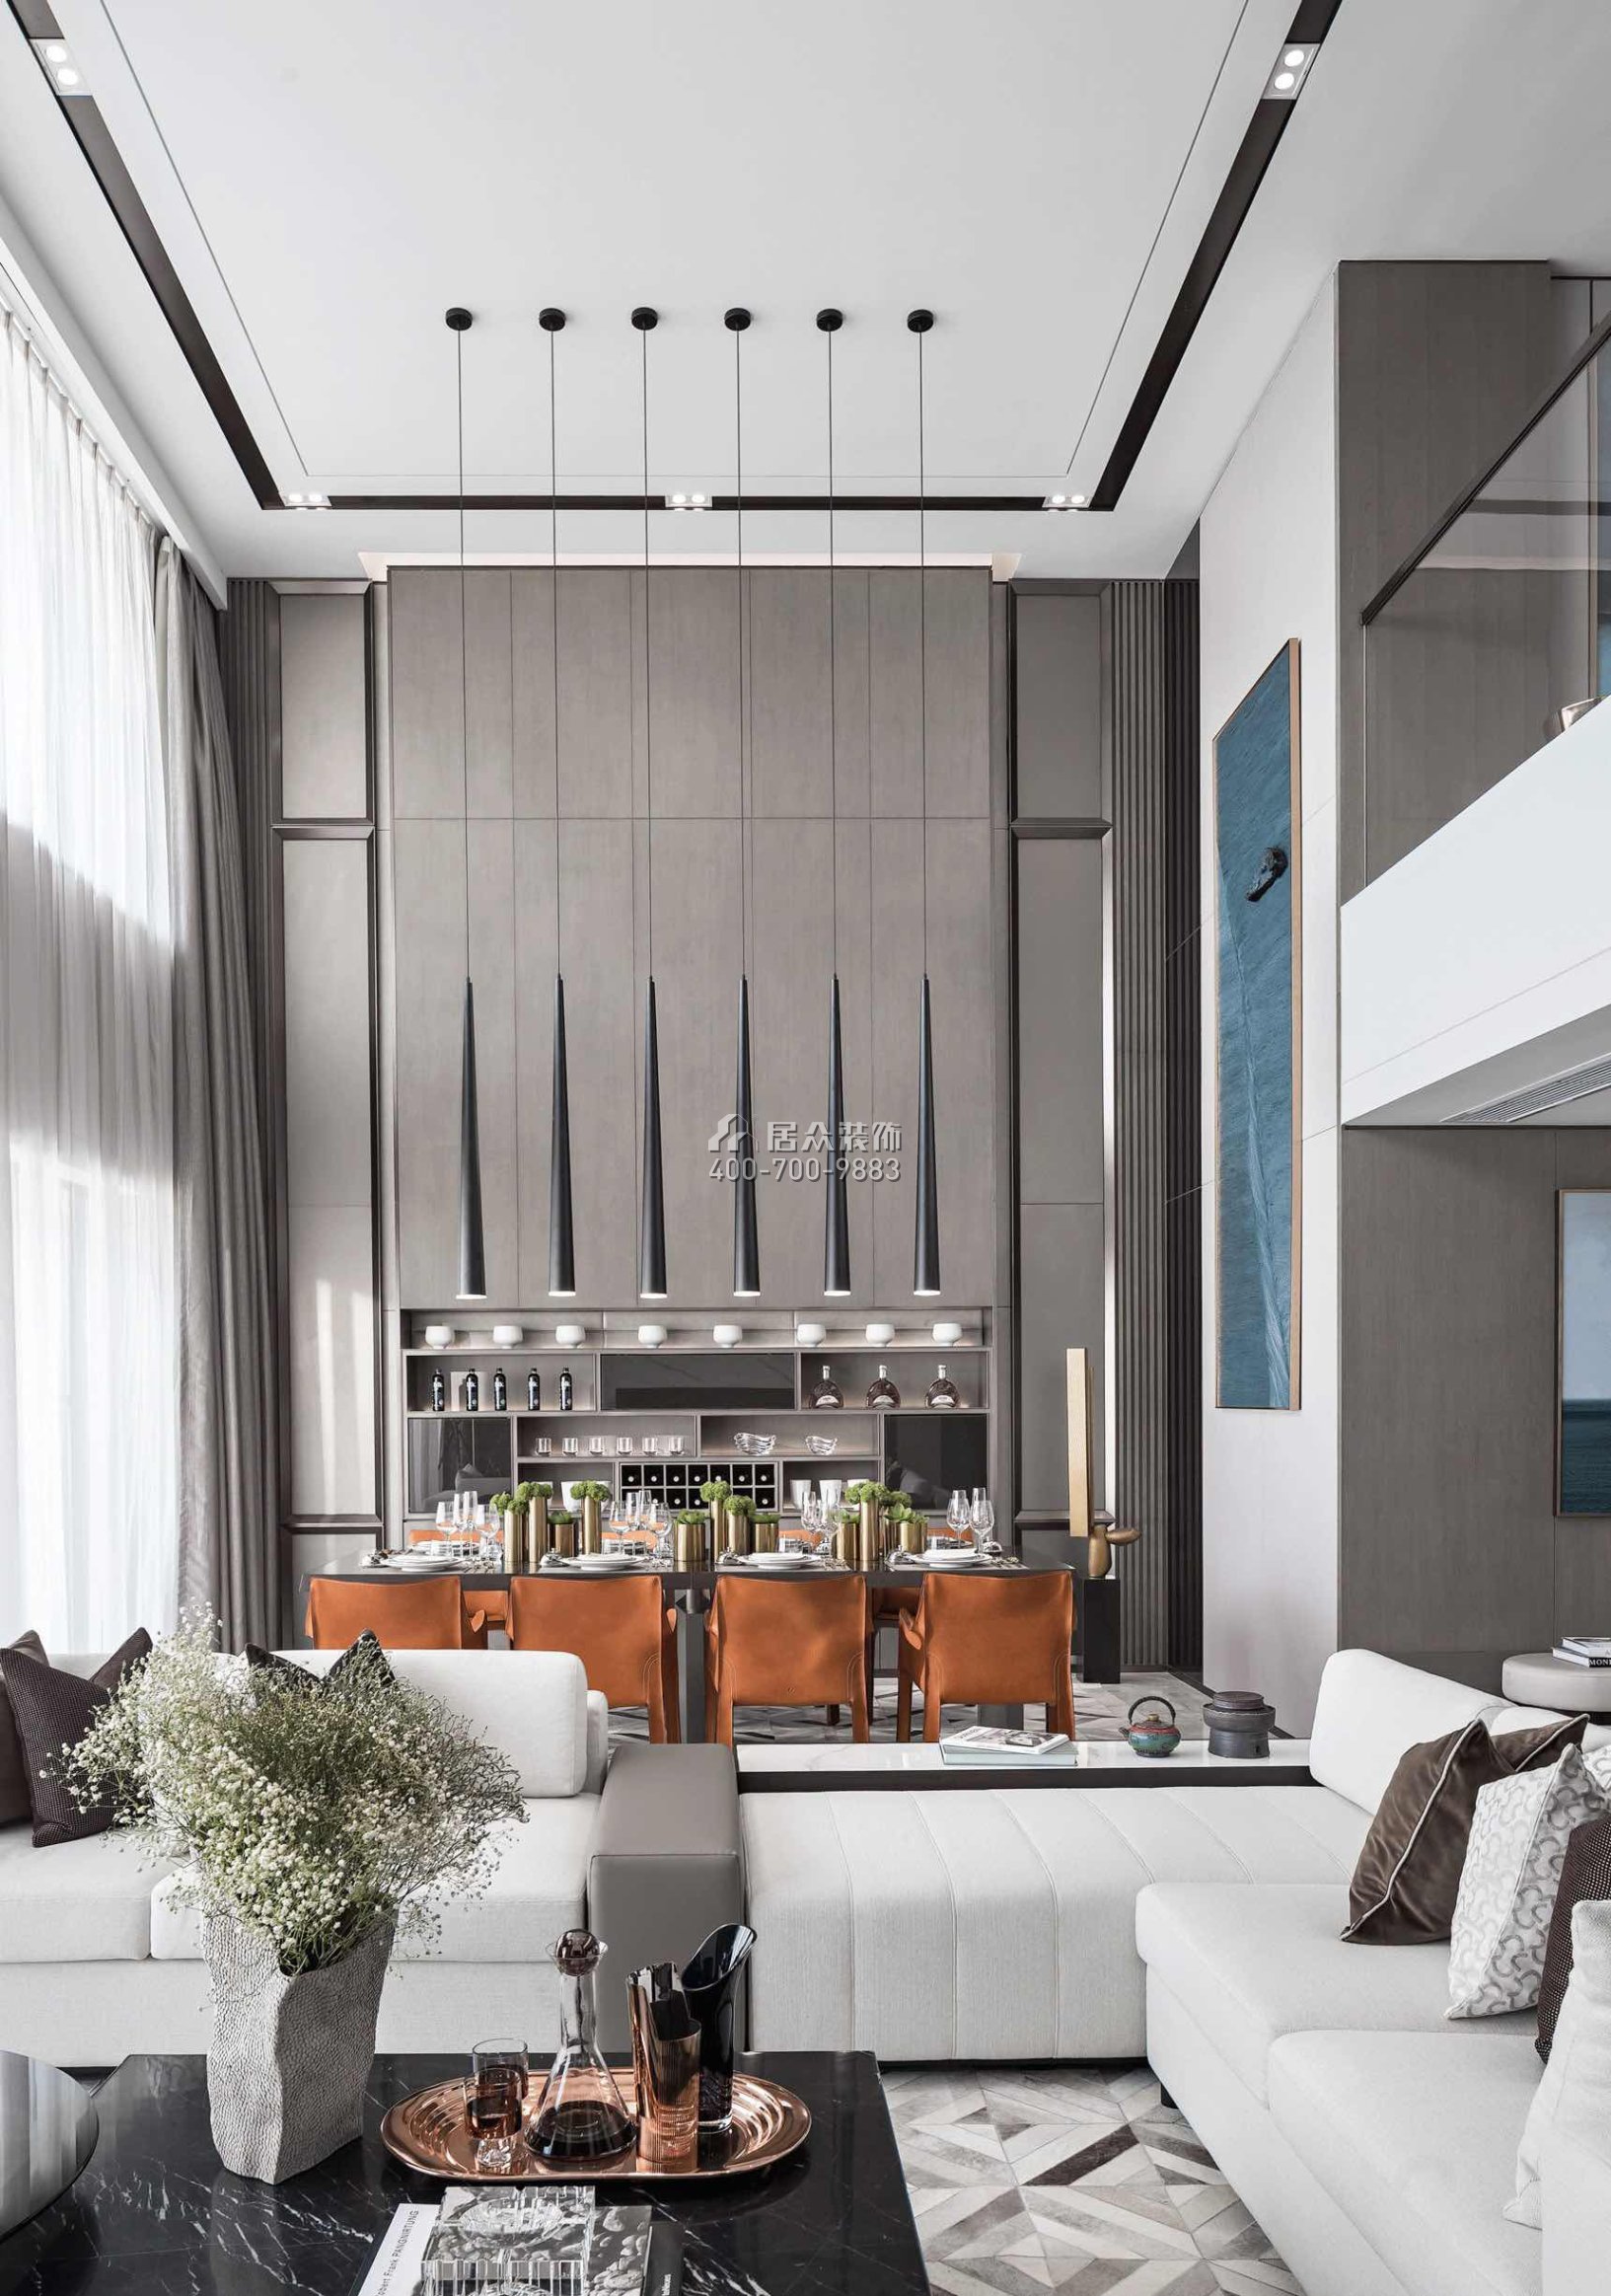 天骄御峰500平方米现代简约风格别墅户型客餐厅一体装修效果图